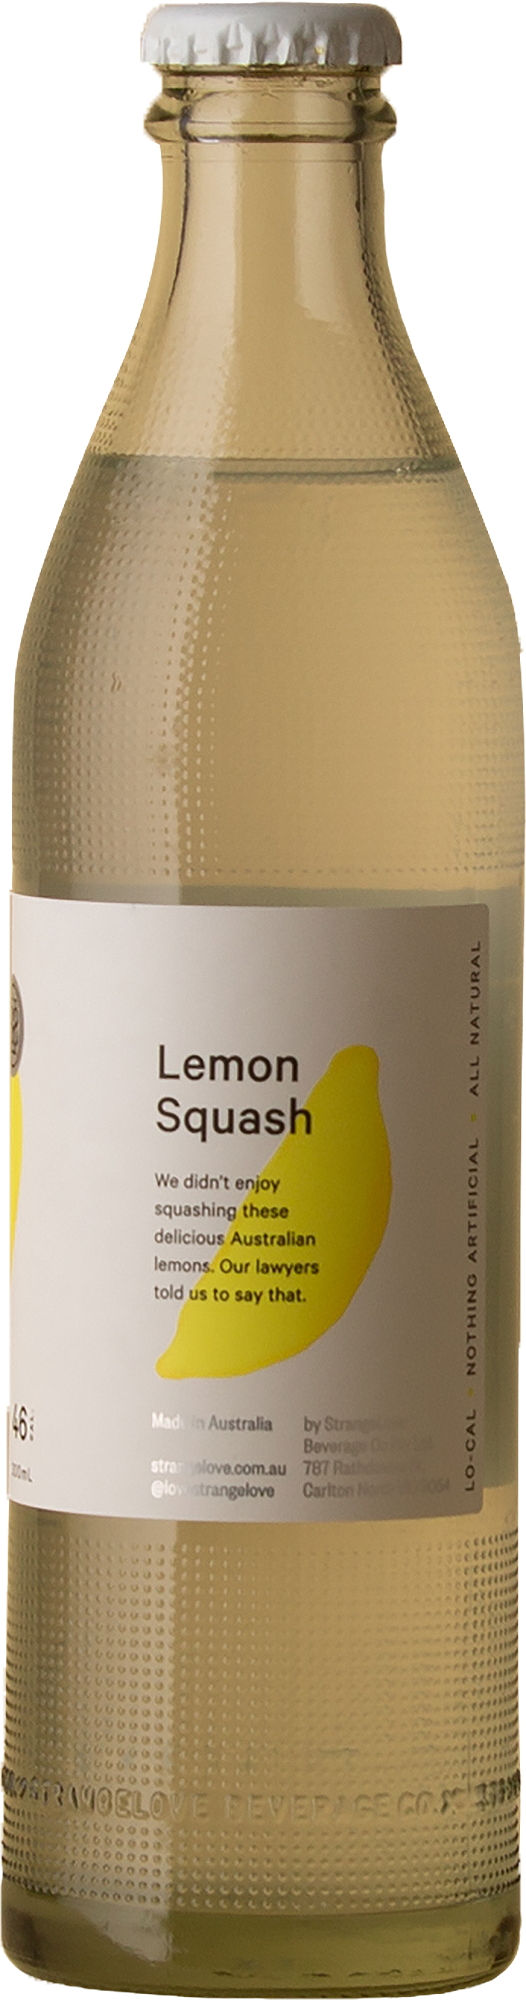 StrangeLove - Lemon Squash Non-Alc